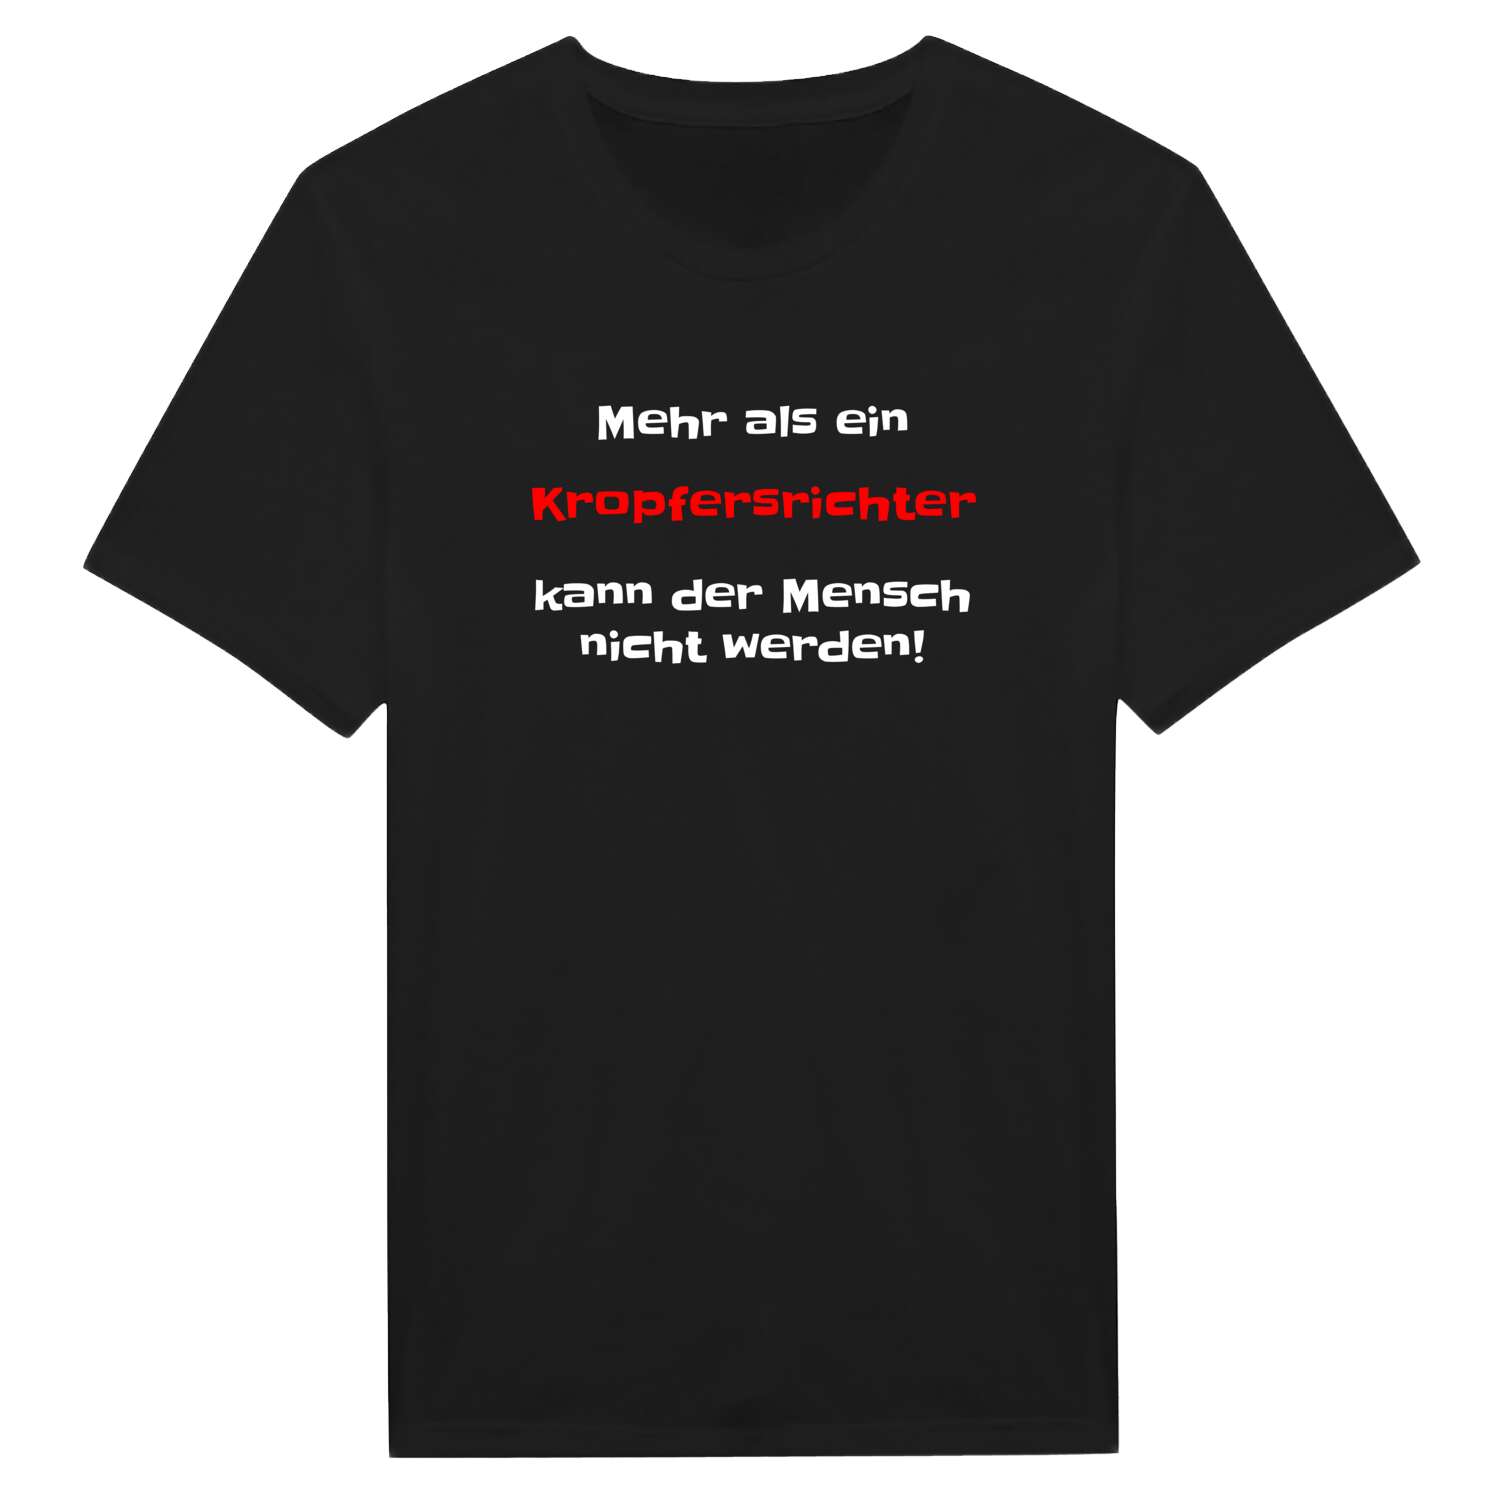 Kropfersricht T-Shirt »Mehr als ein«